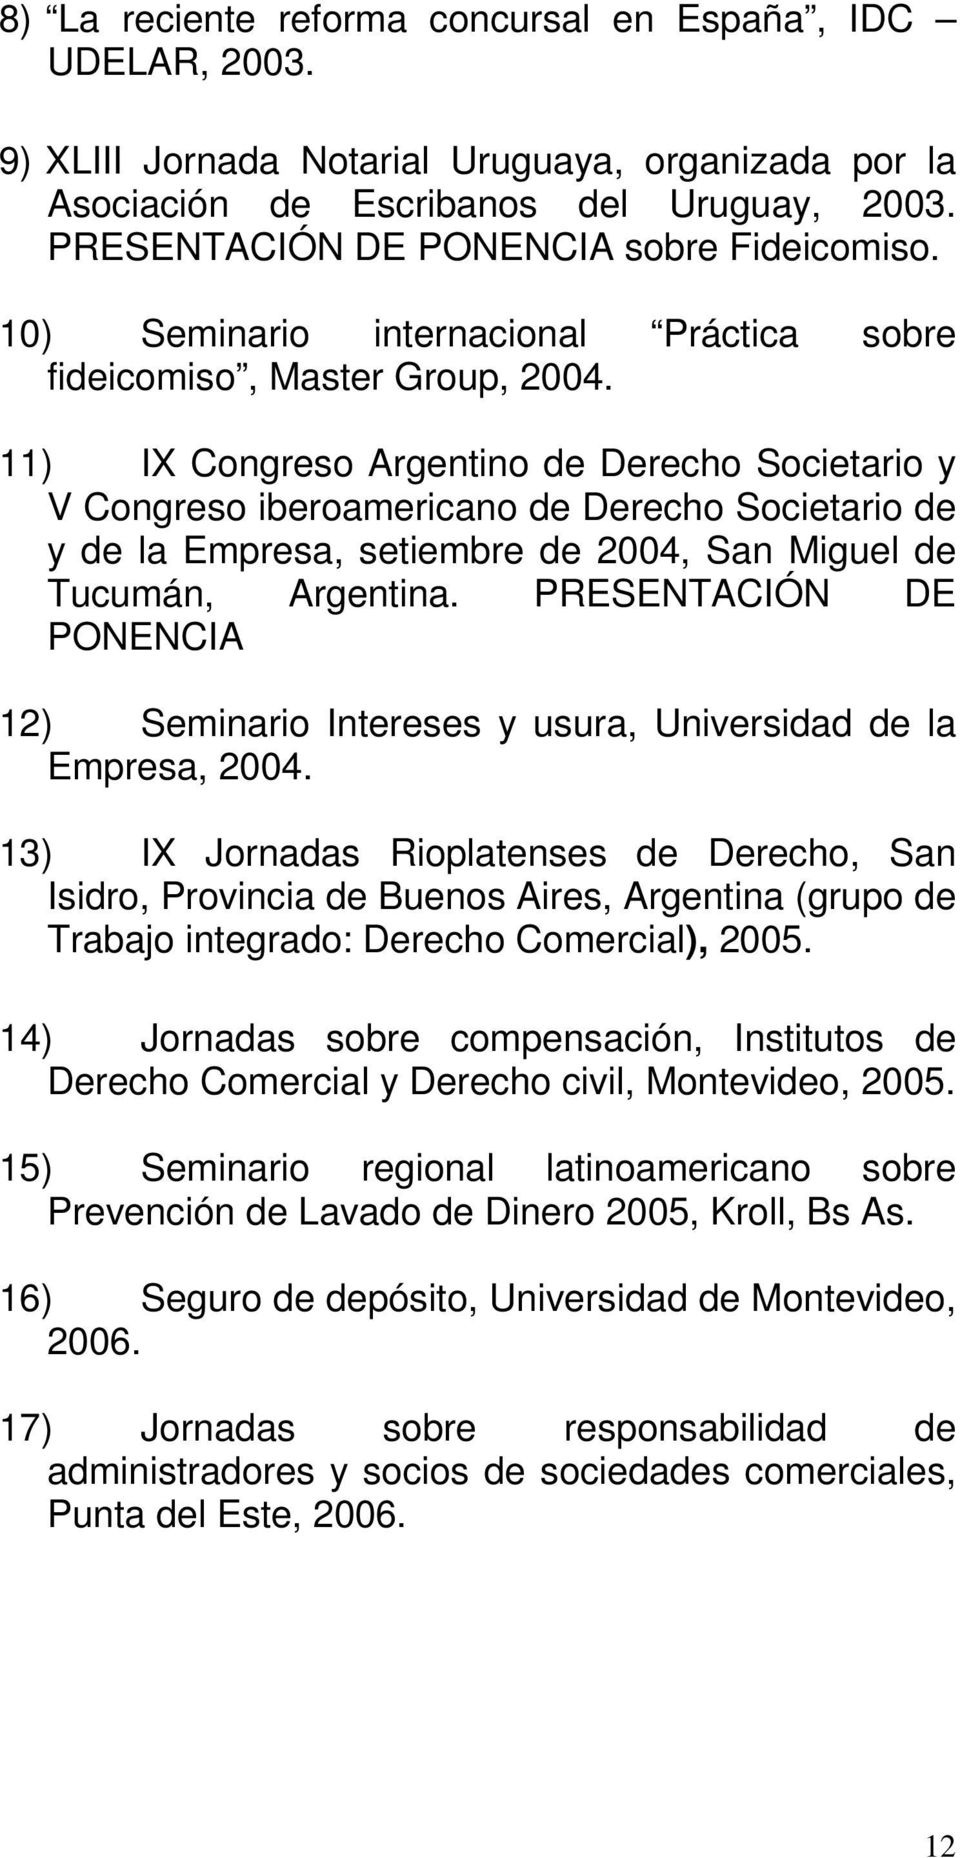 11) IX Congreso Argentino de Derecho Societario y V Congreso iberoamericano de Derecho Societario de y de la Empresa, setiembre de 2004, San Miguel de Tucumán, Argentina.